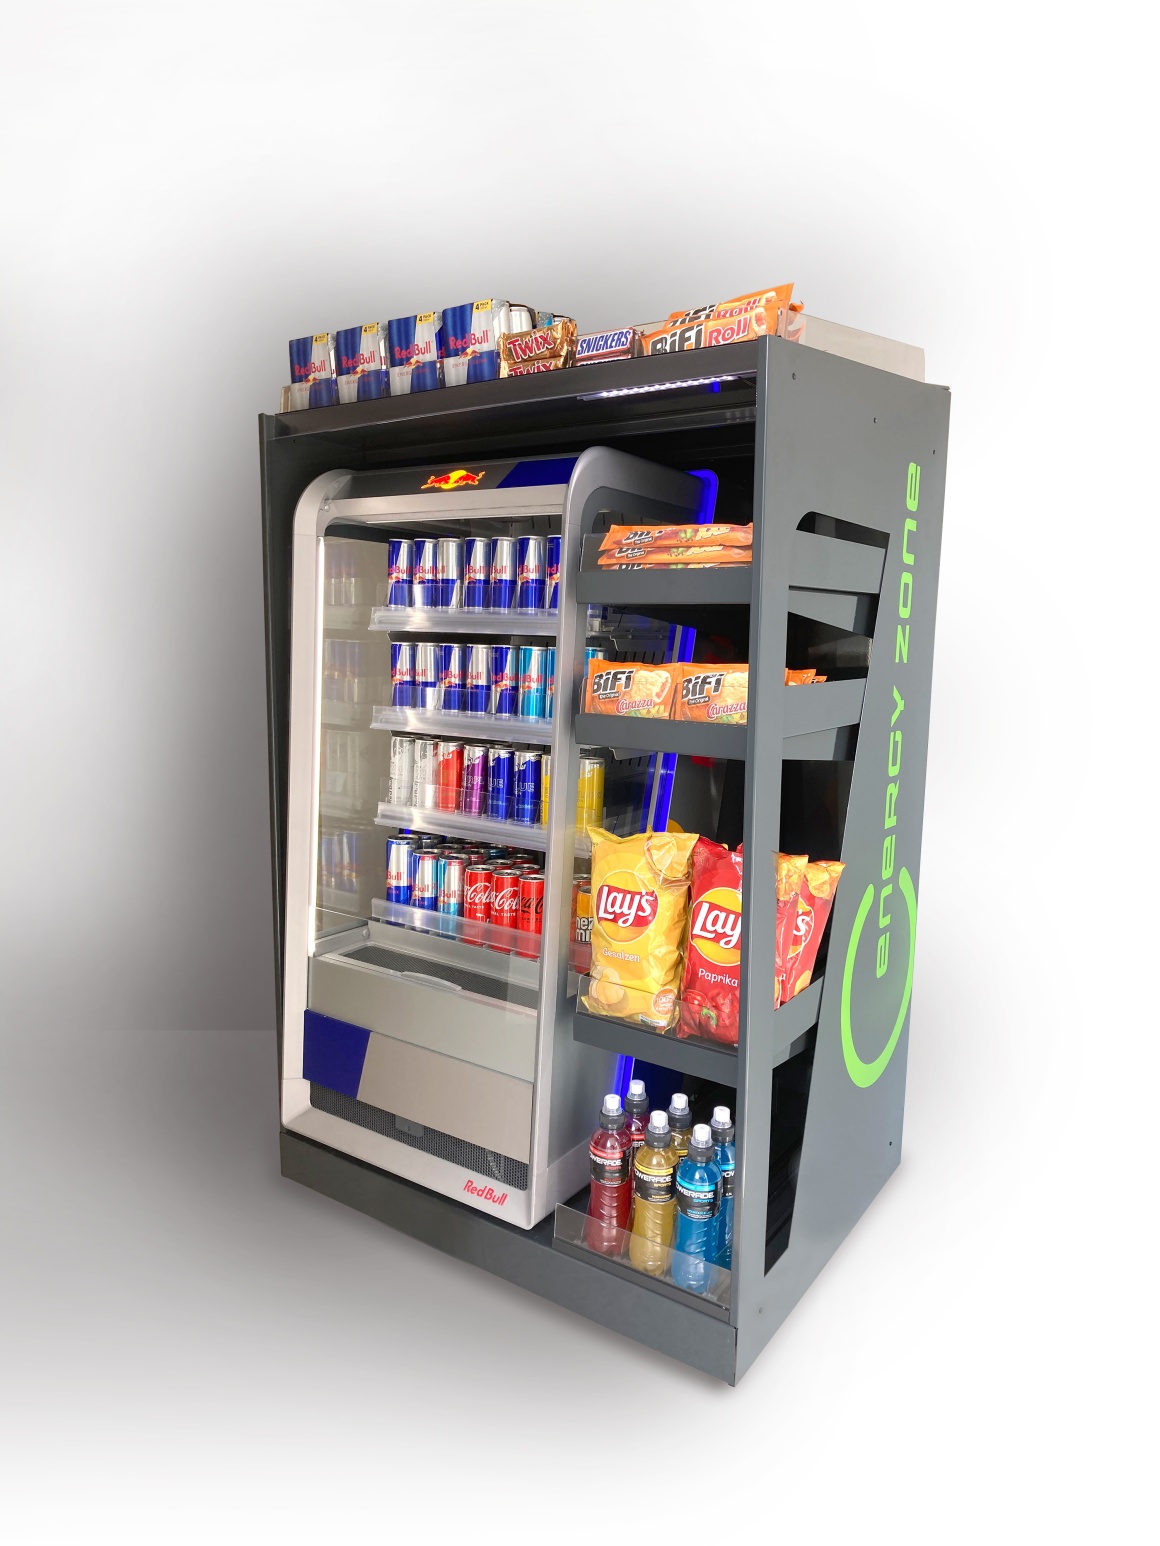 Die Energy Zone ein Automat für Waren.